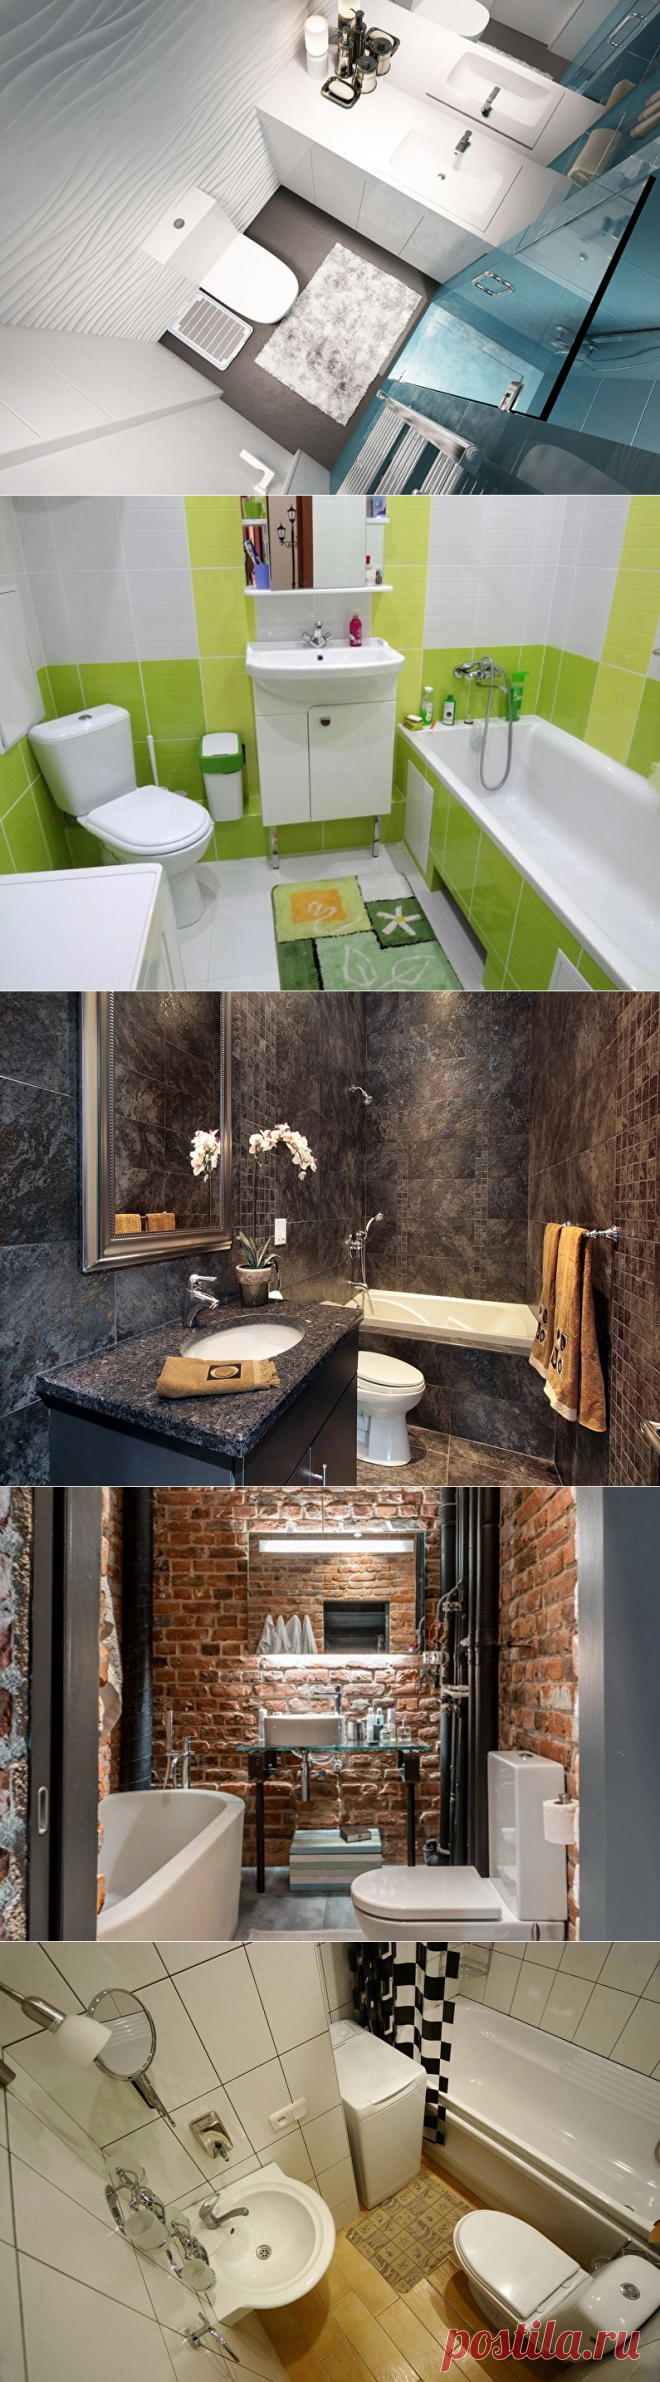 Дизайн маленькой ванной комнаты - 70 фото интерьеров, идеи для ремонта